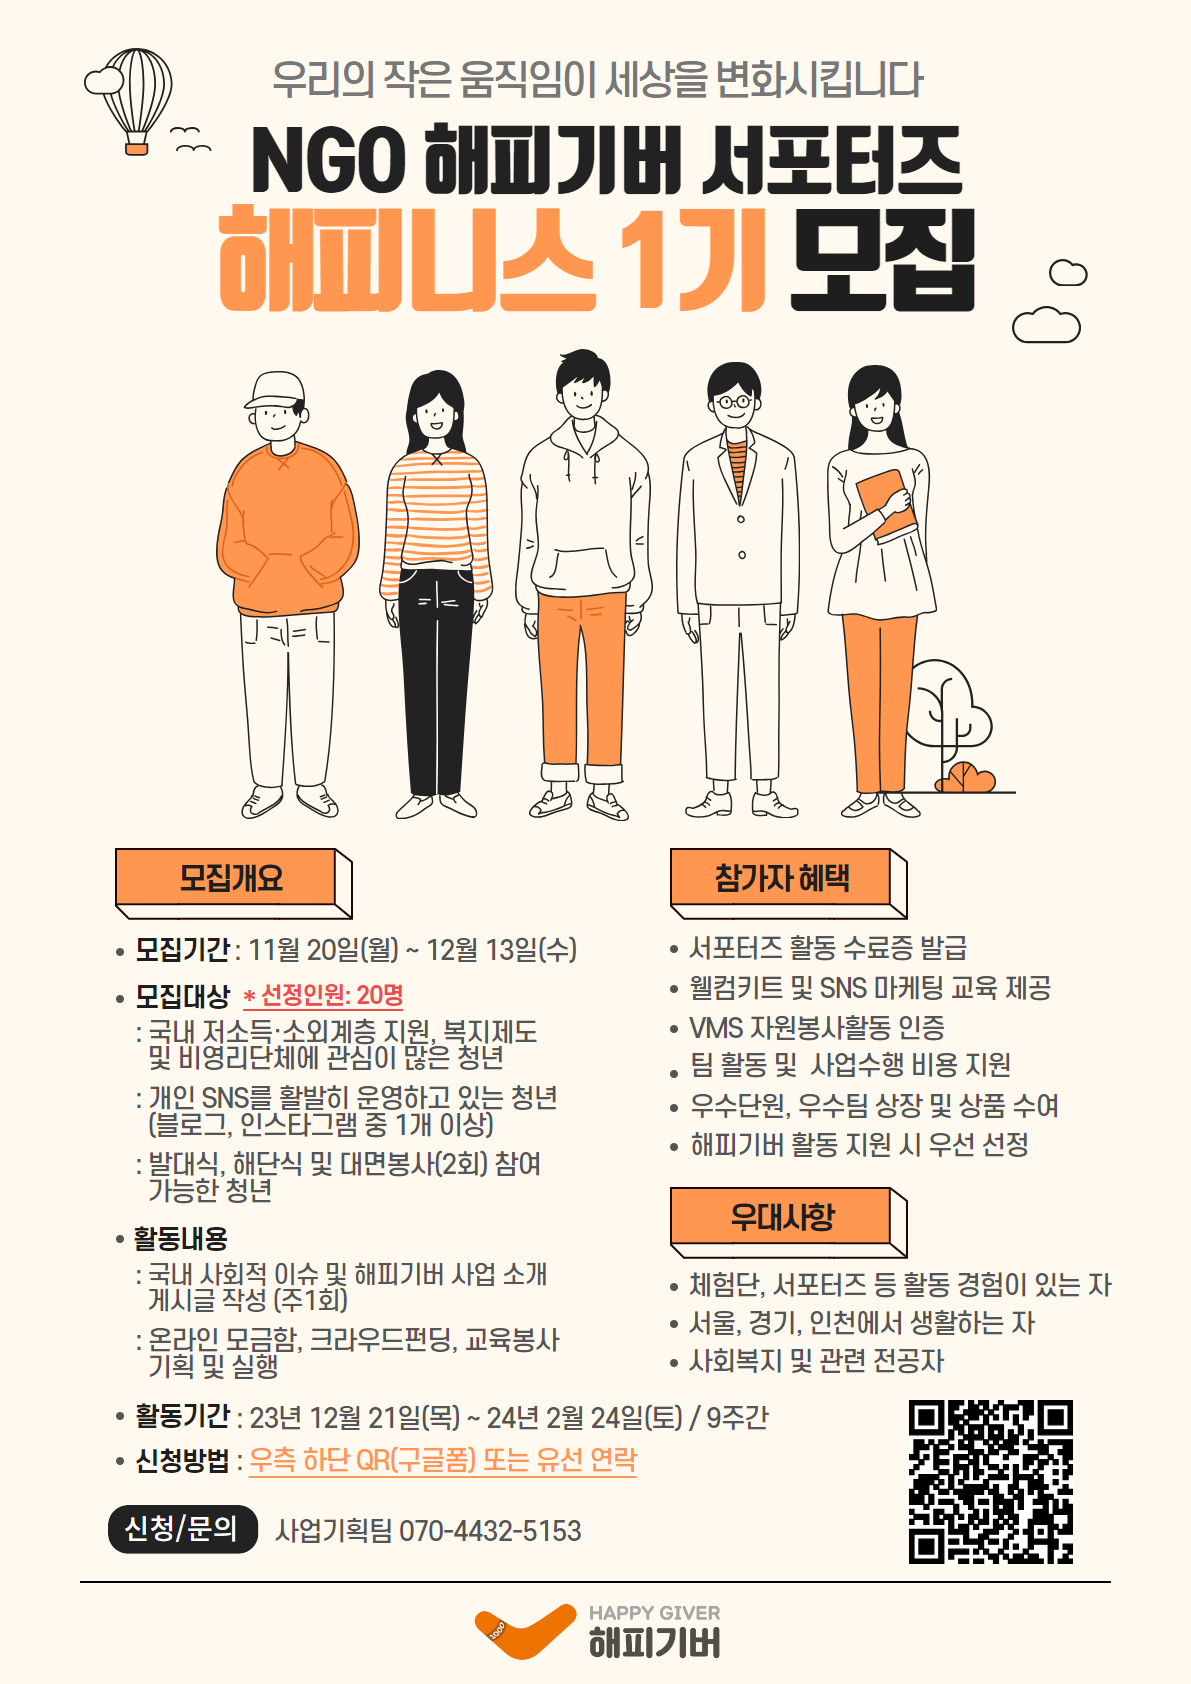 NGO 해피기버 서포터즈 - 해피니스 1기 모집